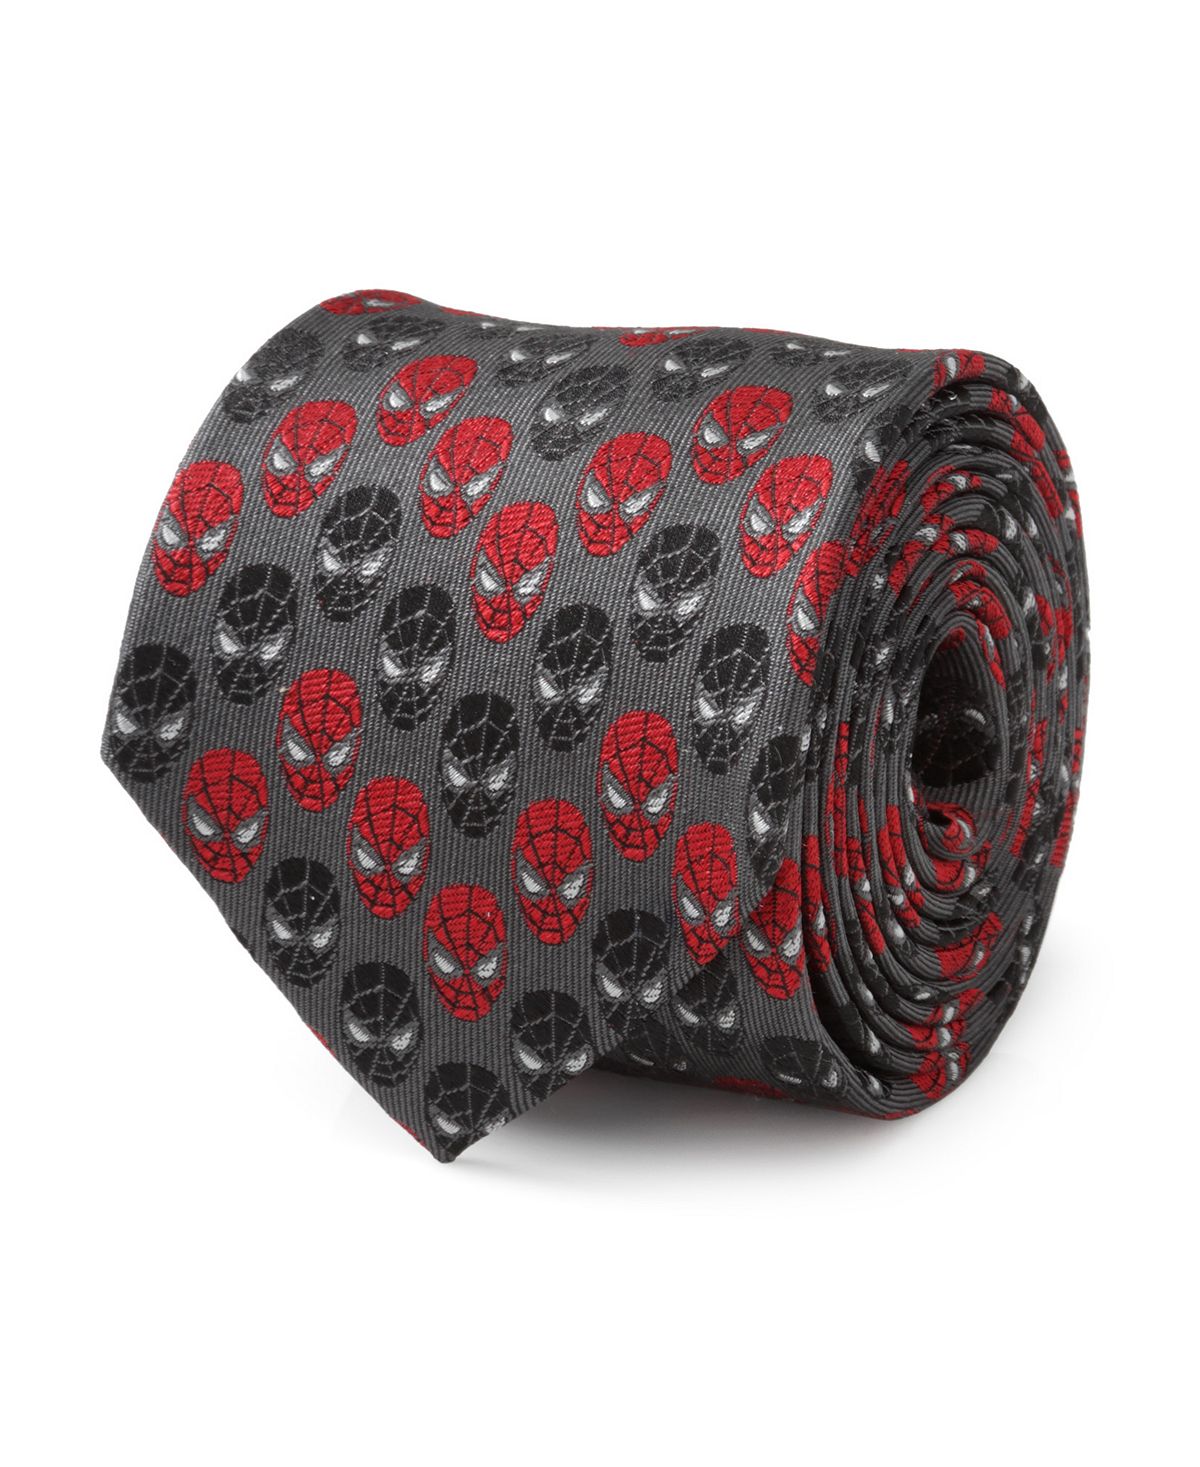 Мужской галстук с шевроном и изображением Человека-паука Marvel